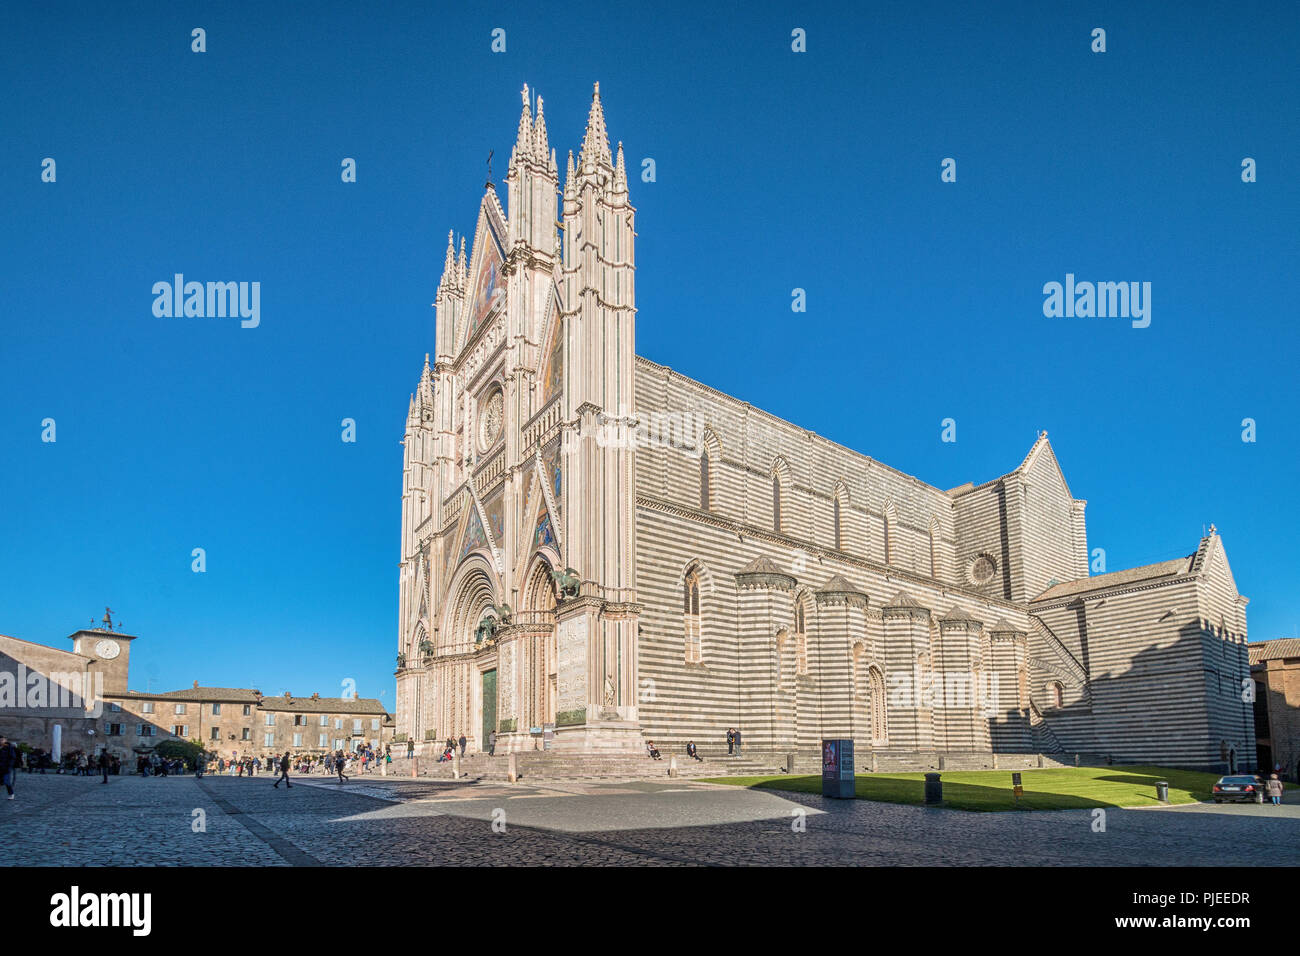 Vue panoramique de la cathédrale d'Orvieto (Duomo di Orvieto), l'Ombrie, Italie Banque D'Images